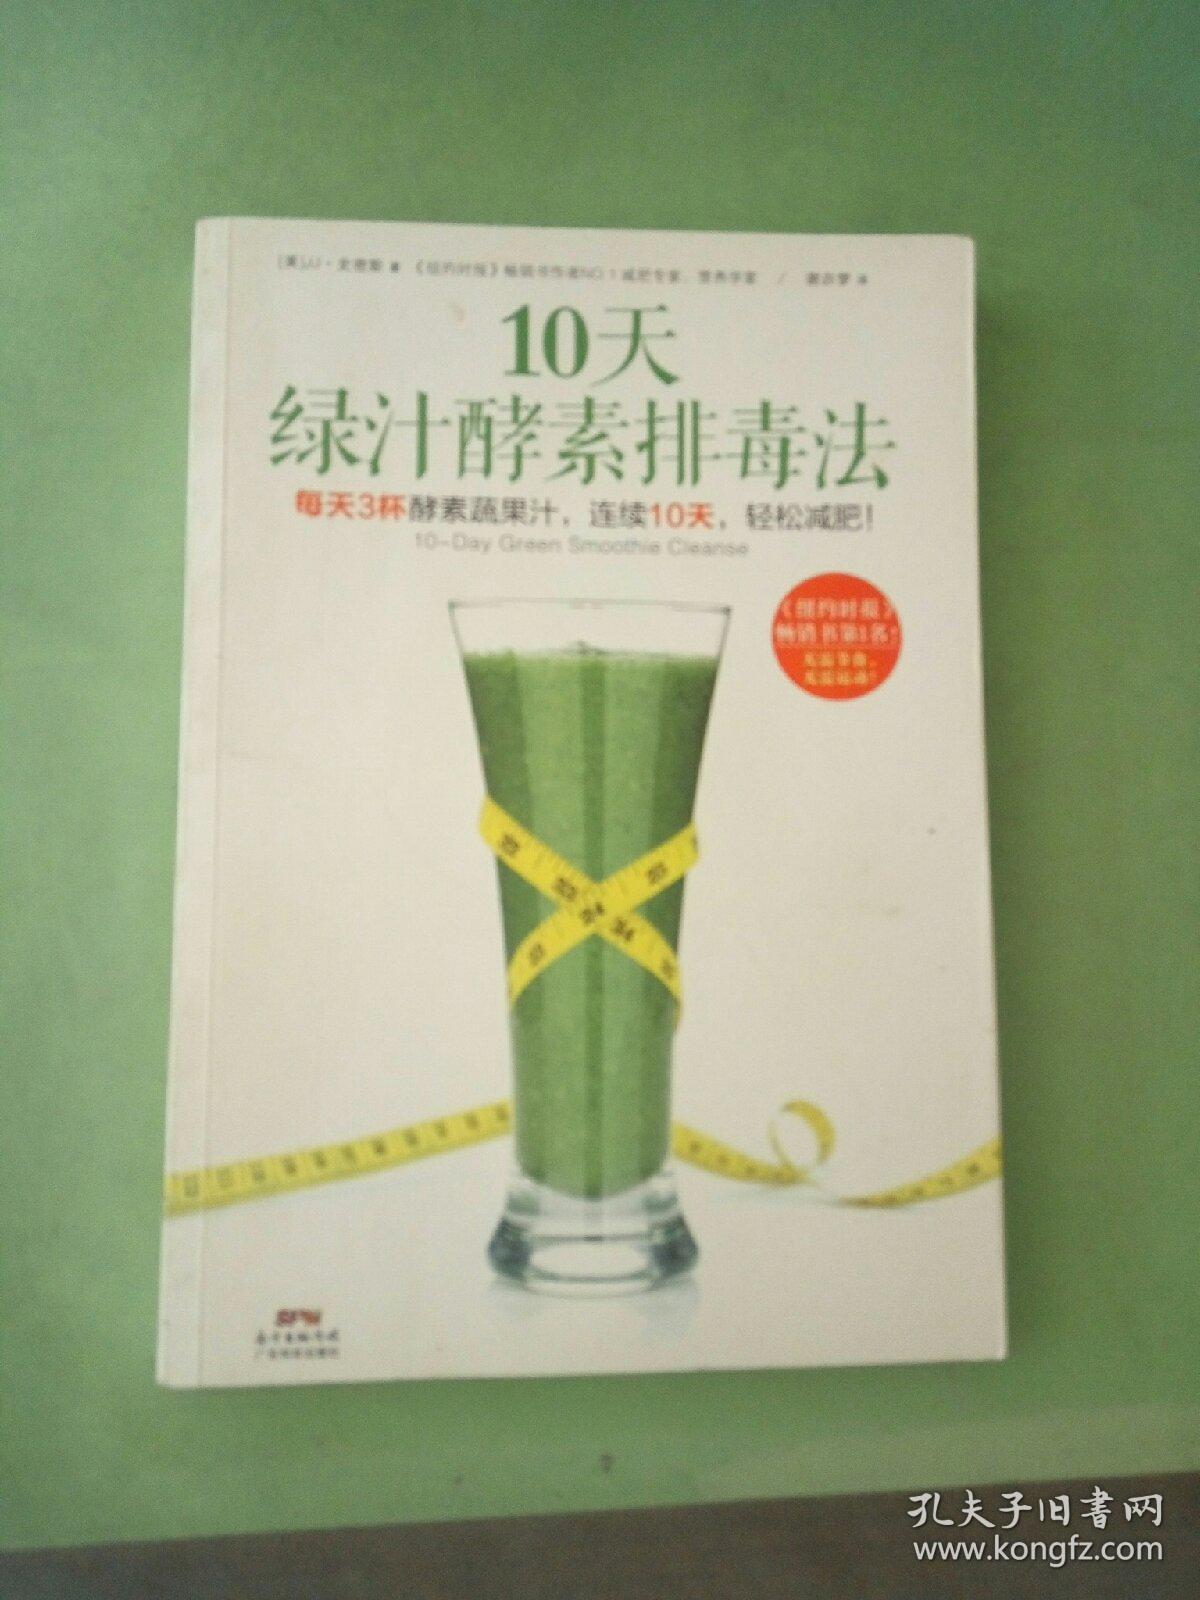 10天绿汁酵素排毒法。